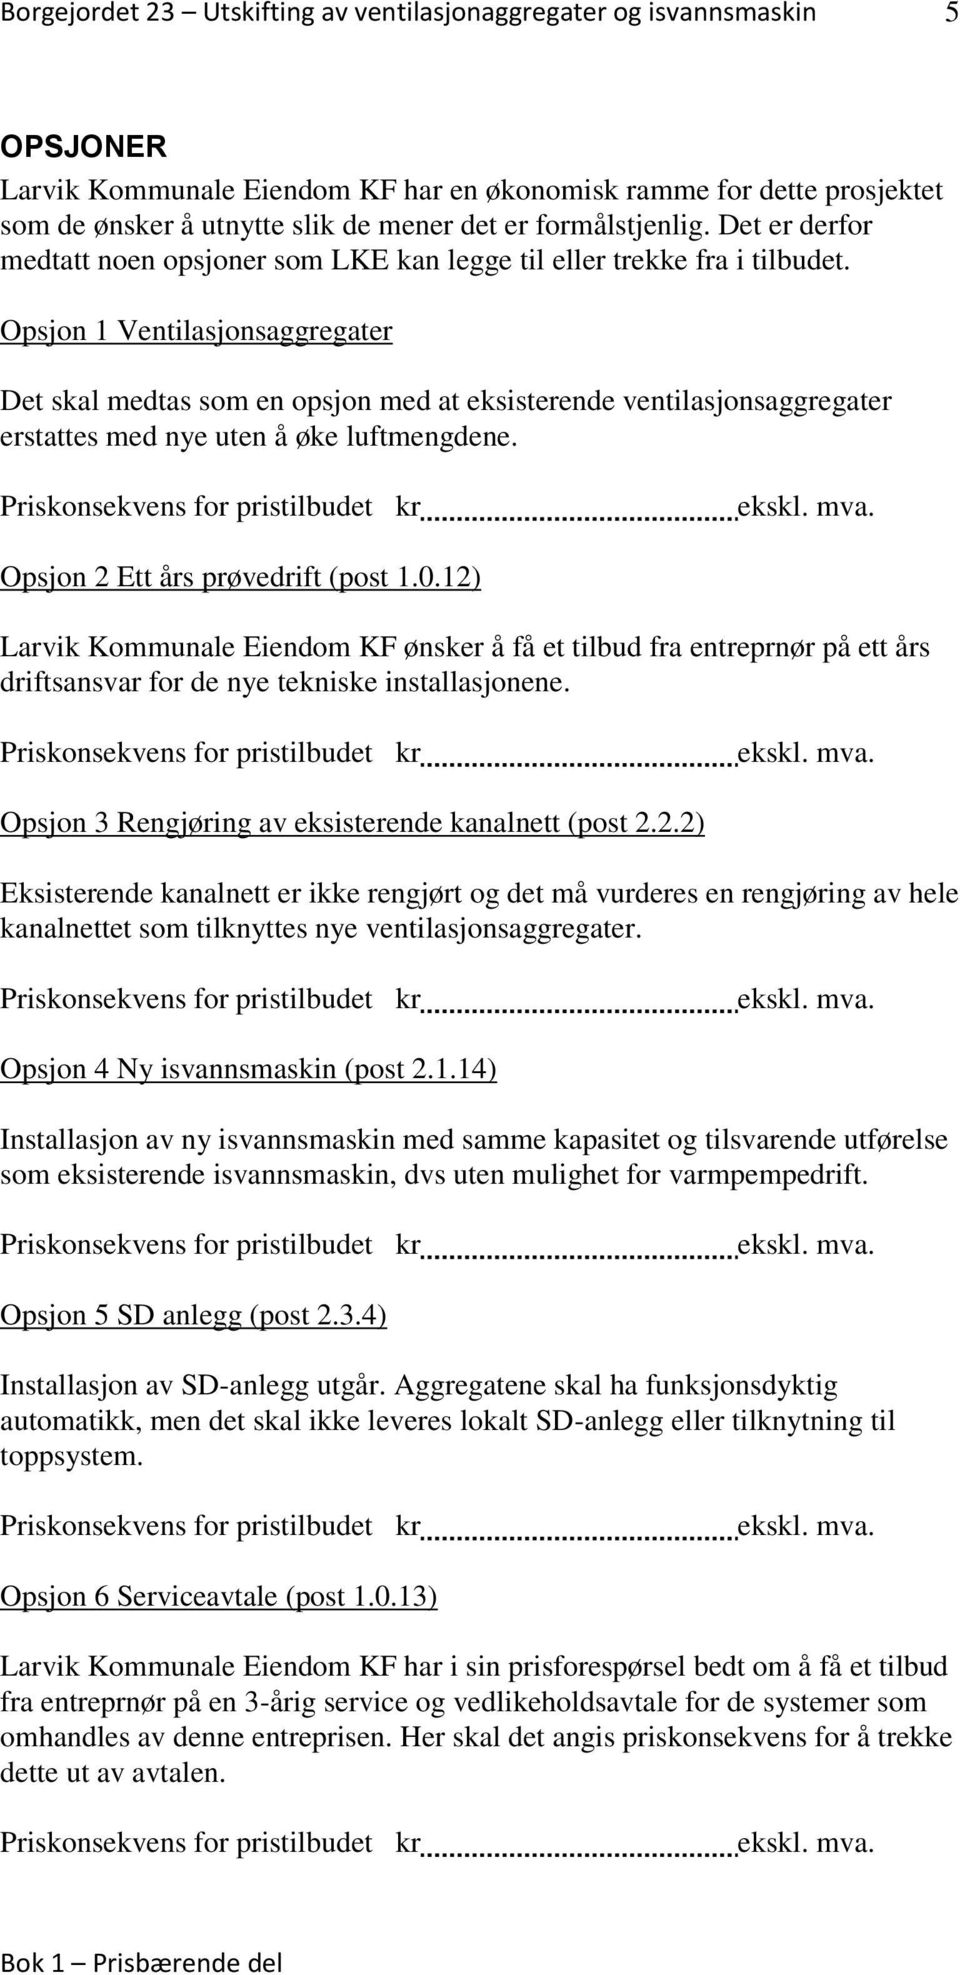 prøvedrift (post 1012) Larvik Kommunale Eiendom KF ønsker å få et tilbud fra entreprnør på ett års driftsansvar for de nye tekniske installasjonene Opsjon 3 Rengjøring av eksisterende kanalnett (post